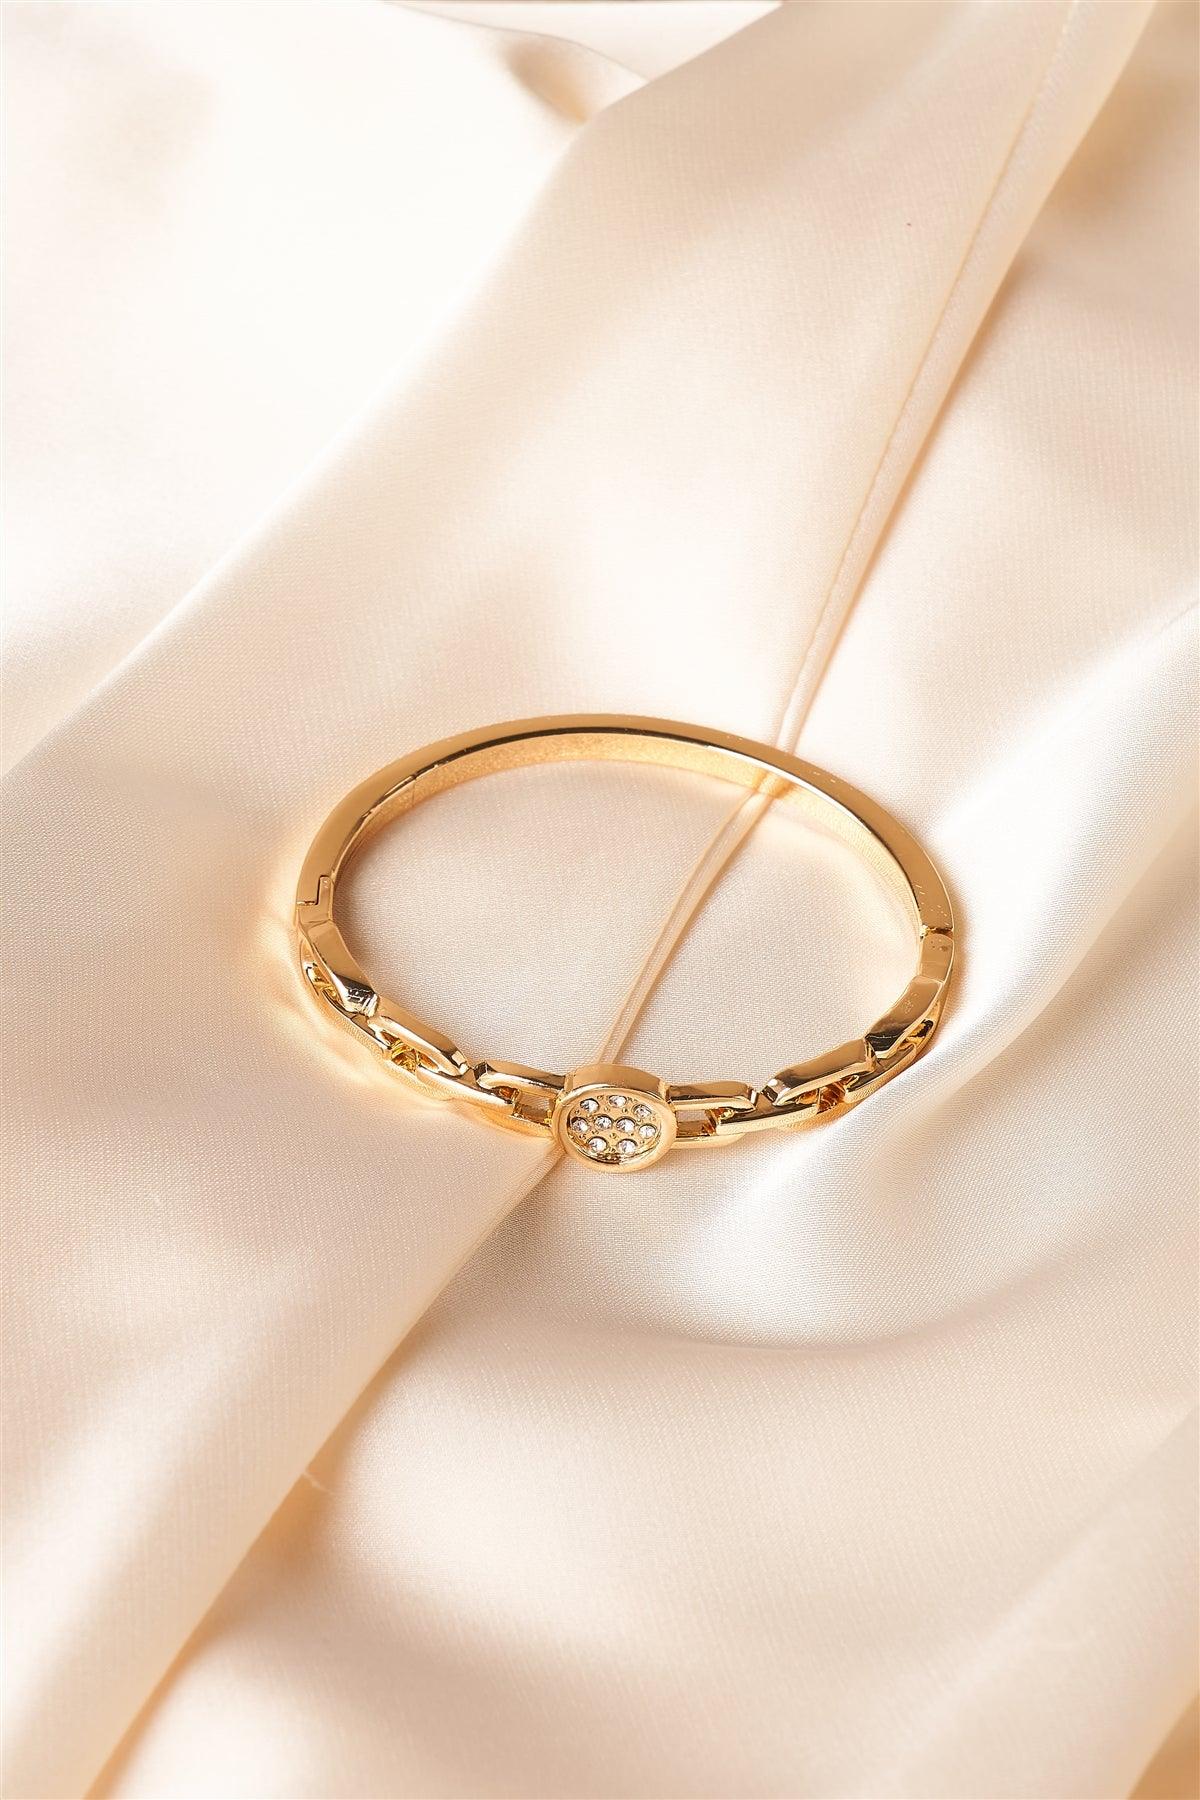 Gold Chain Bangle Clasp Bracelet /6 Pieces